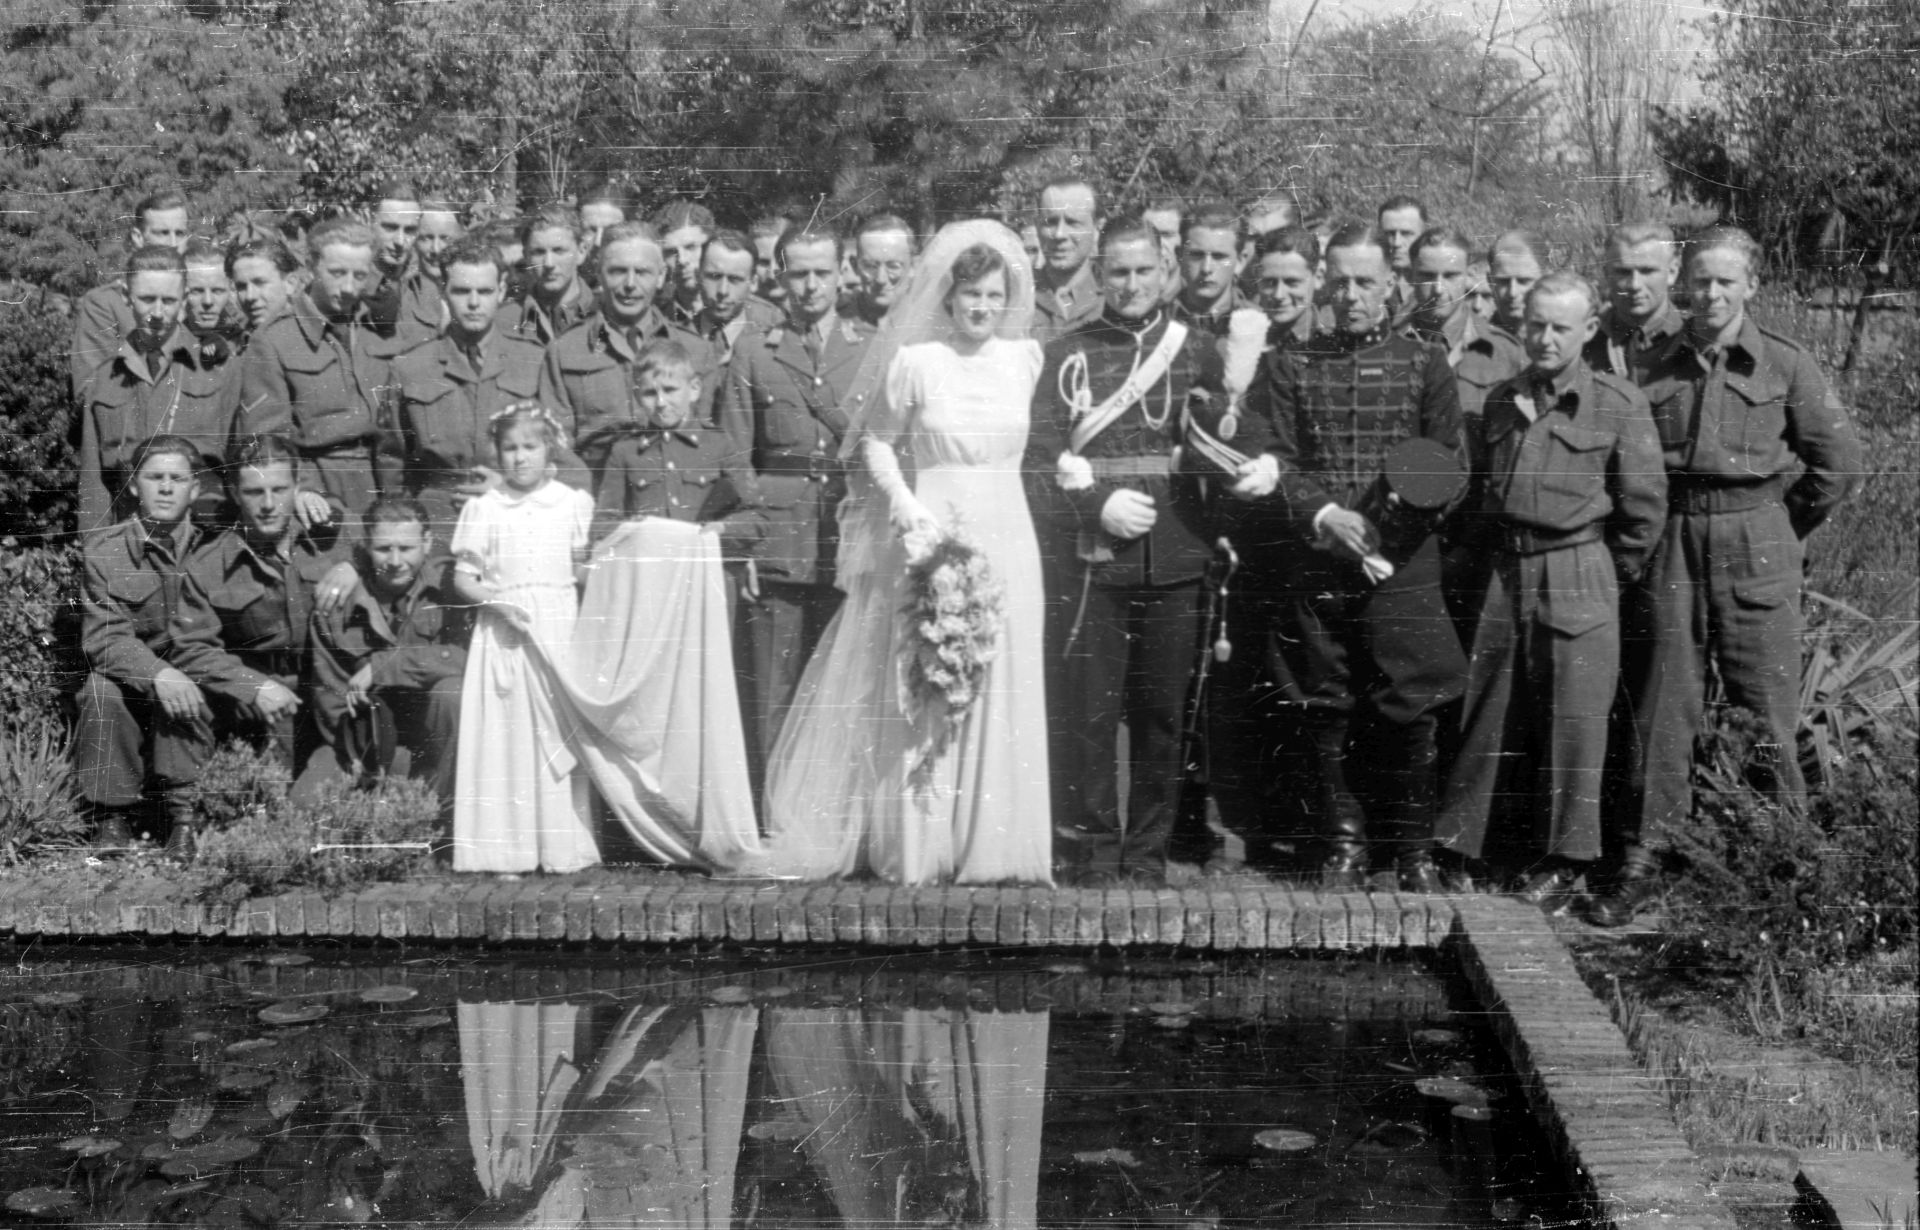 Huwelijk van Huwelijk Smidt van Gelder - Bischoff van Heemskerck, 1946